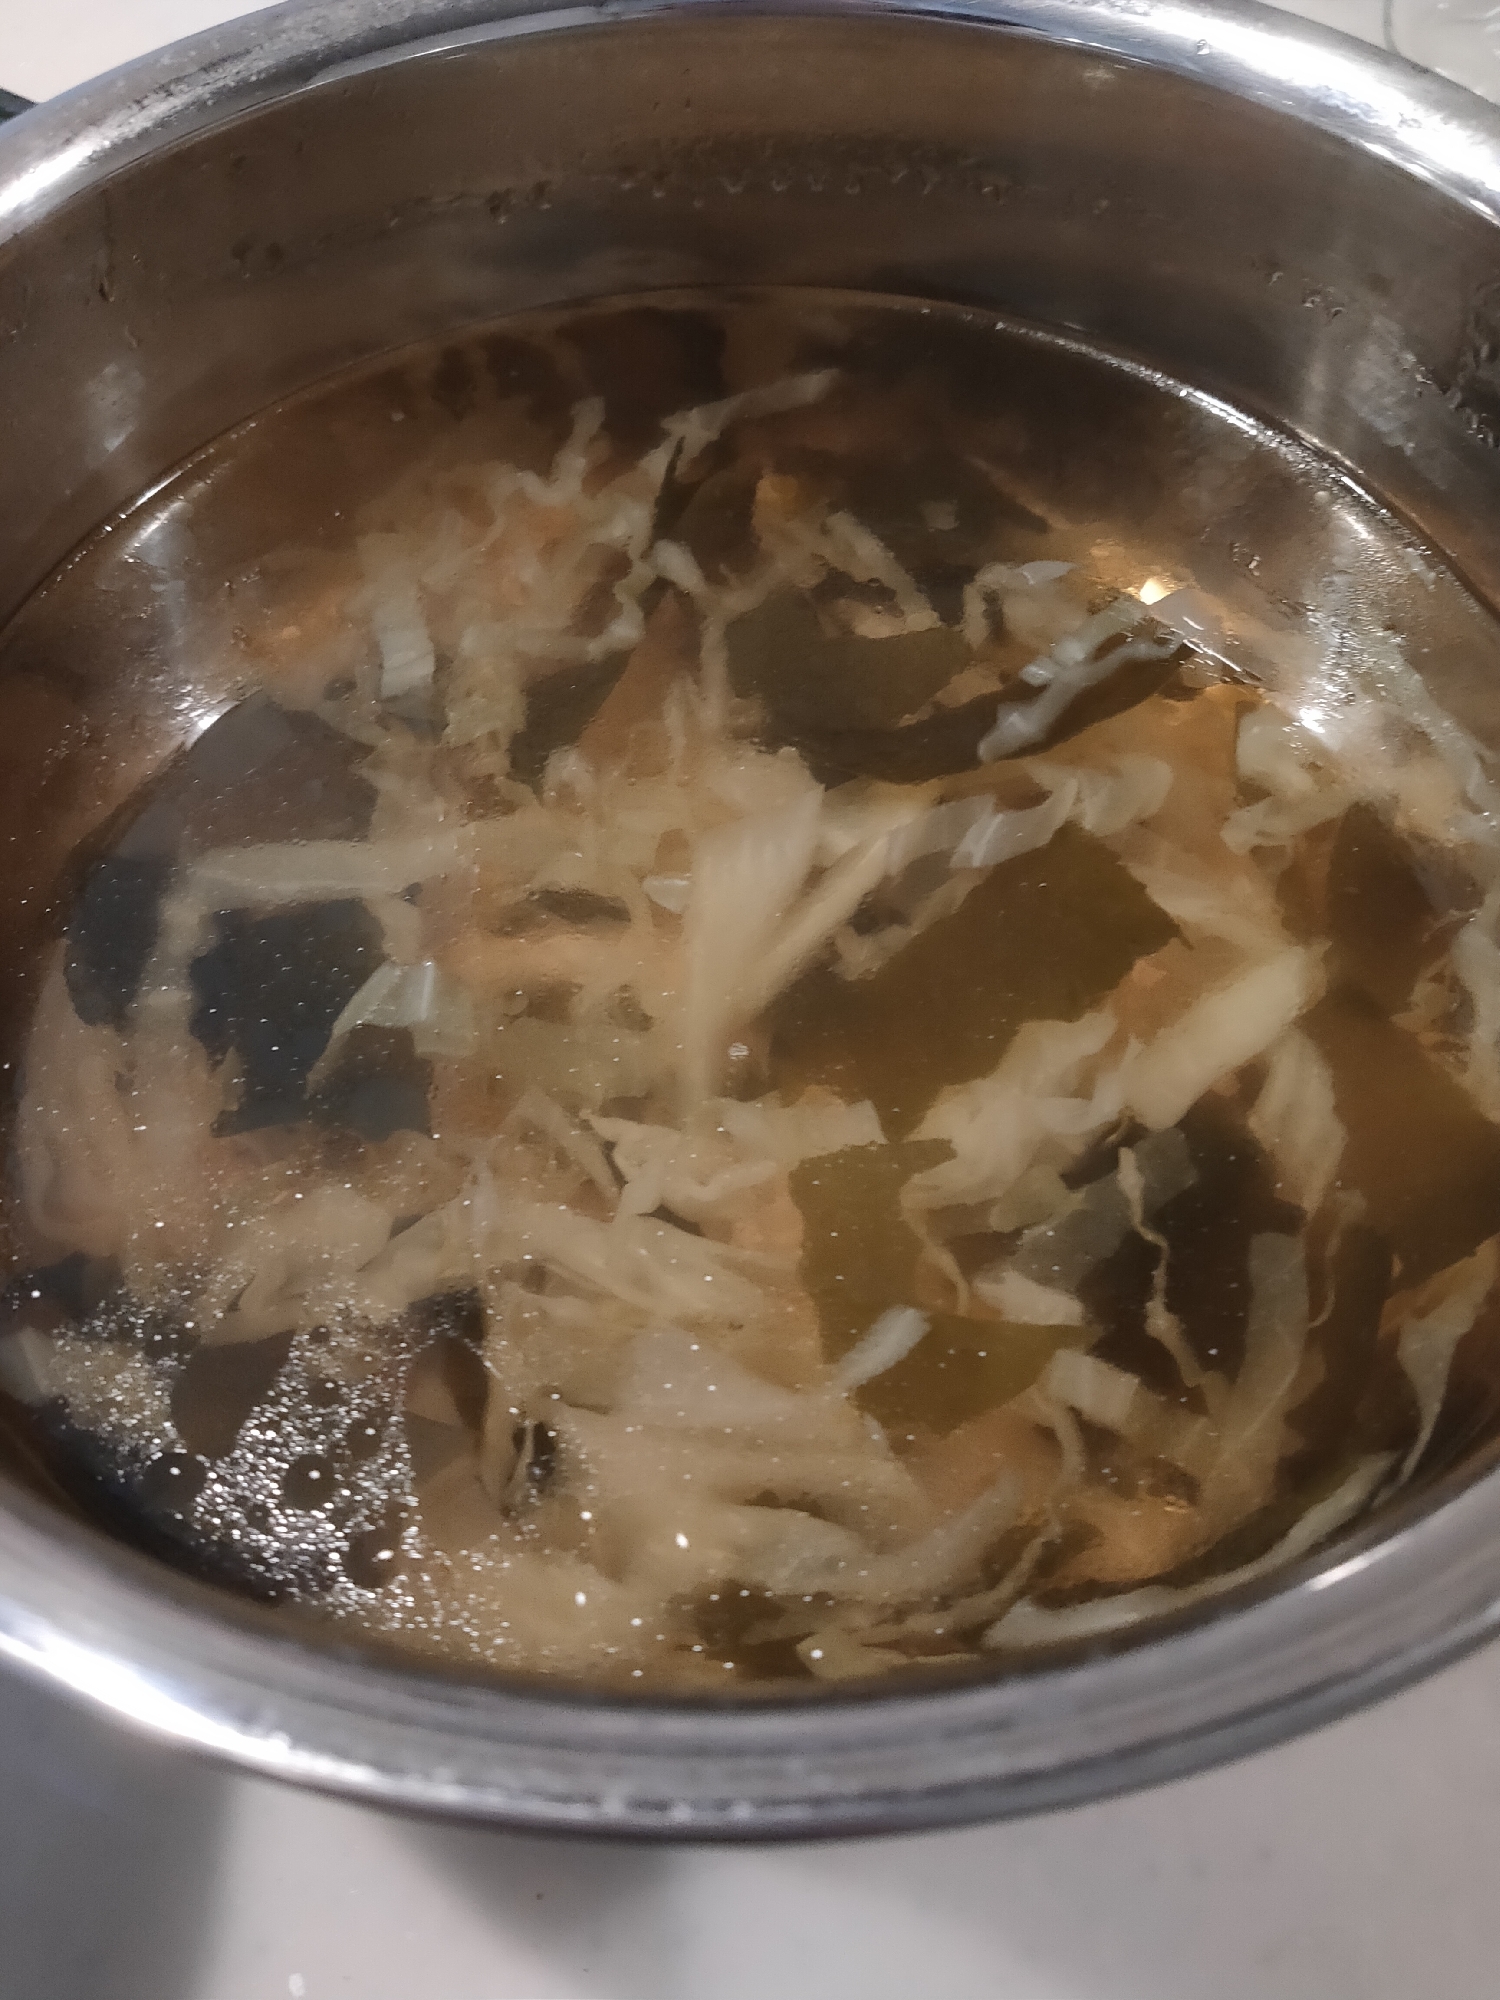 キャベツとわかめの中華スープ